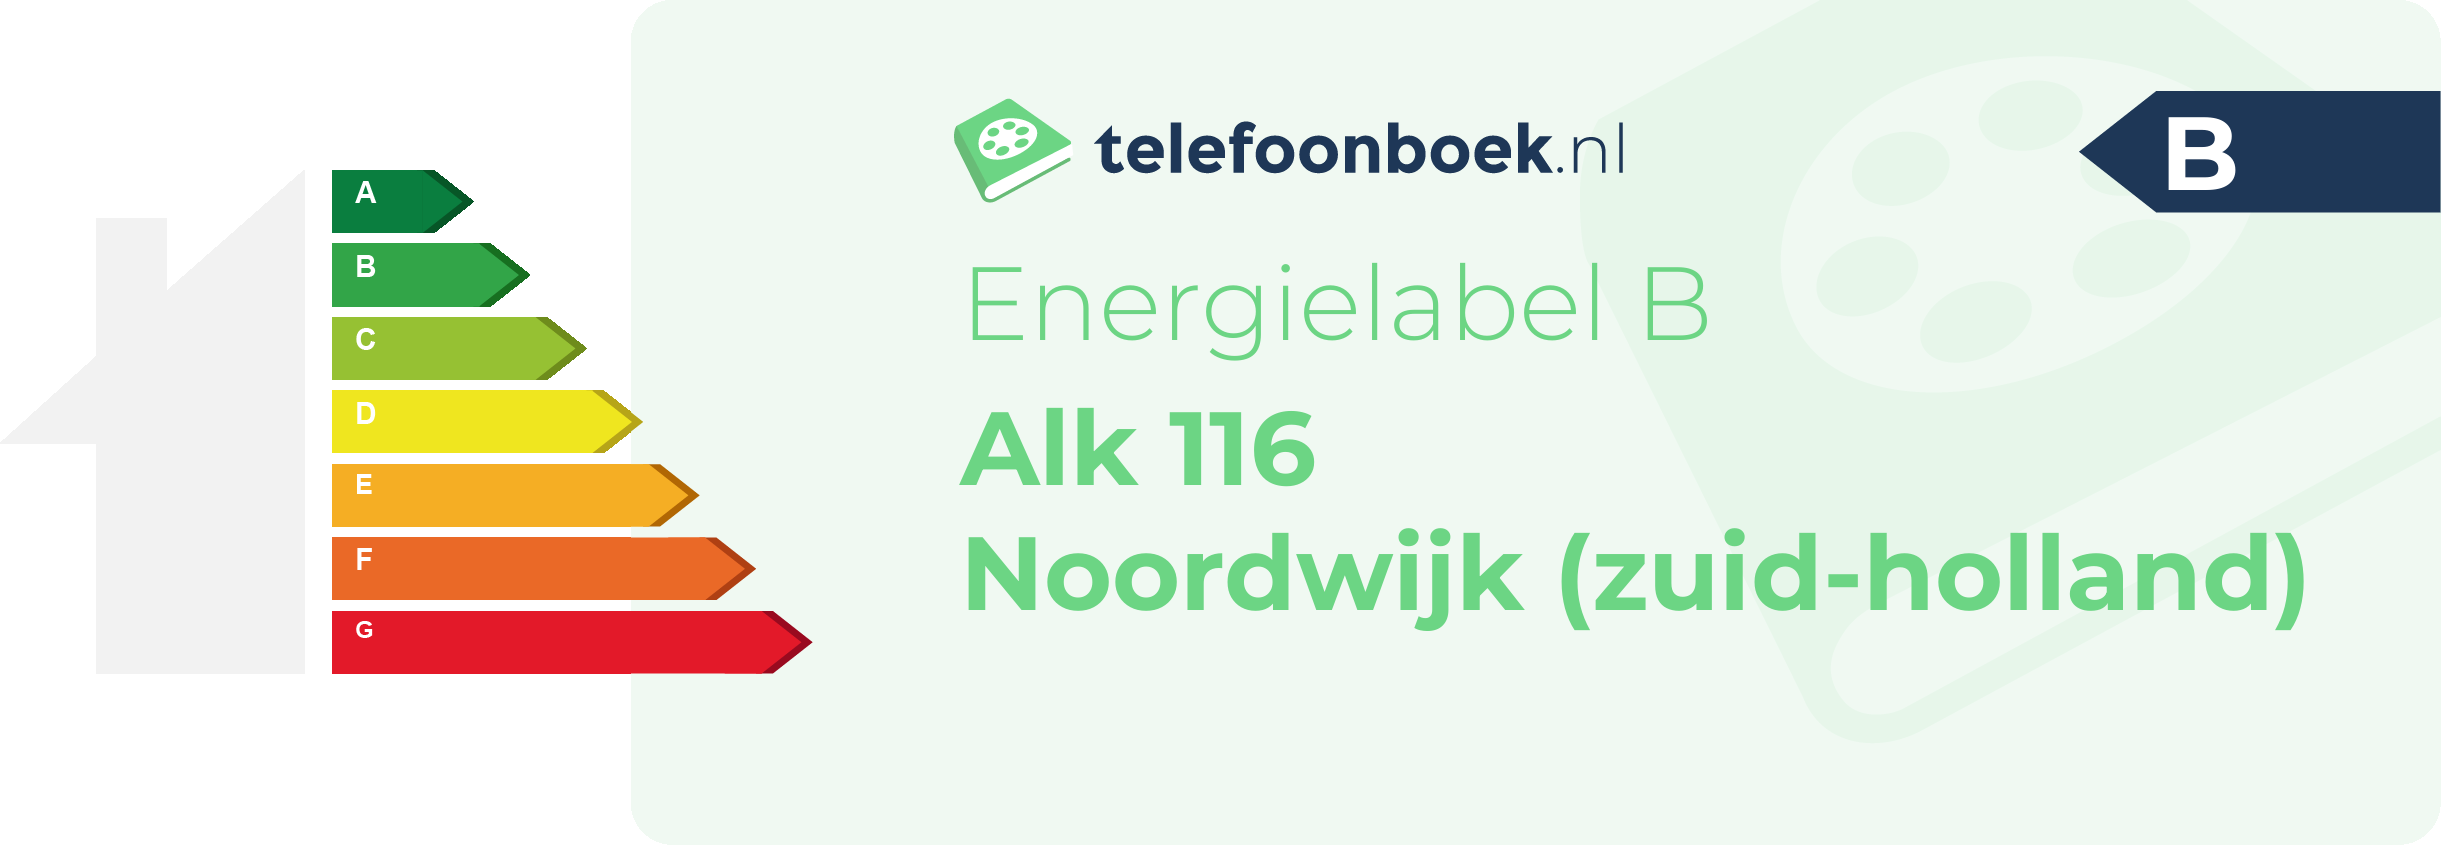 Energielabel Alk 116 Noordwijk (Zuid-Holland)